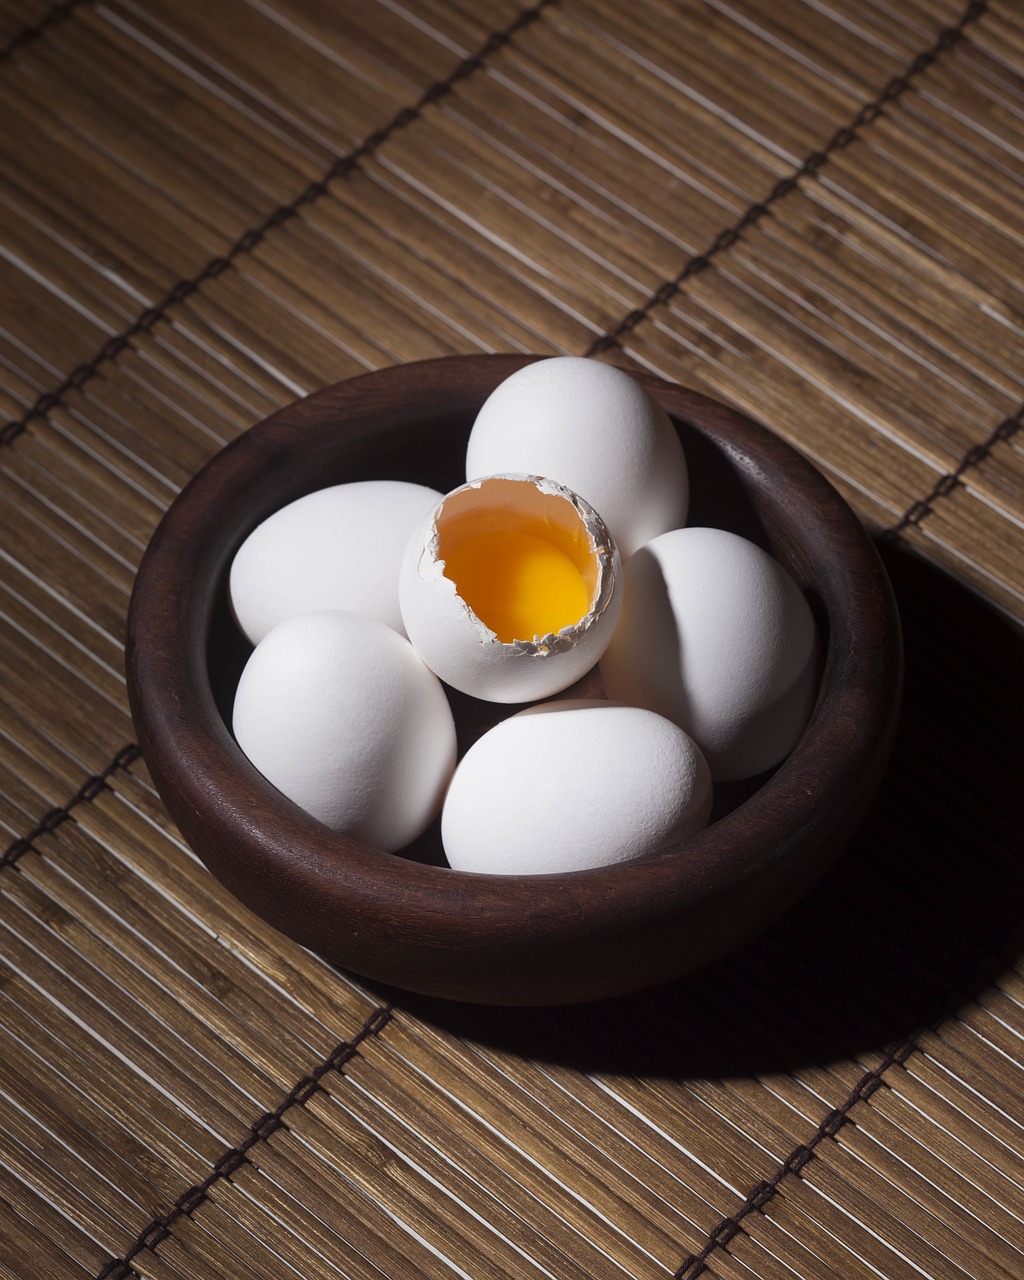 Uzgodnienie świadectwa zdrowia dla produktów jaj